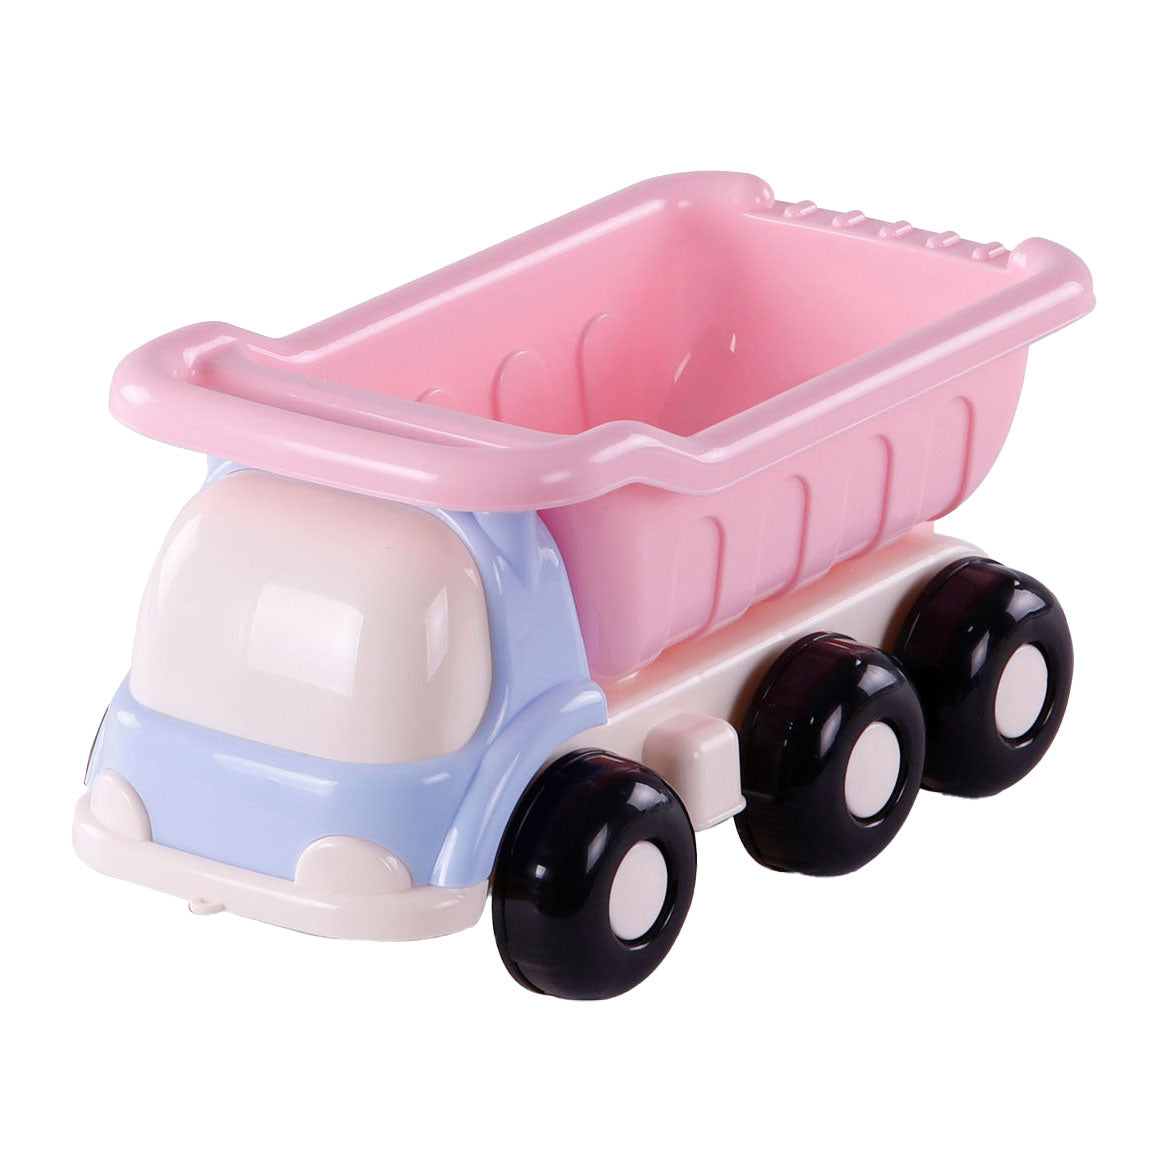 Cavallino Toys Cavallino Beach Kiepwagen Pink, 29 cm